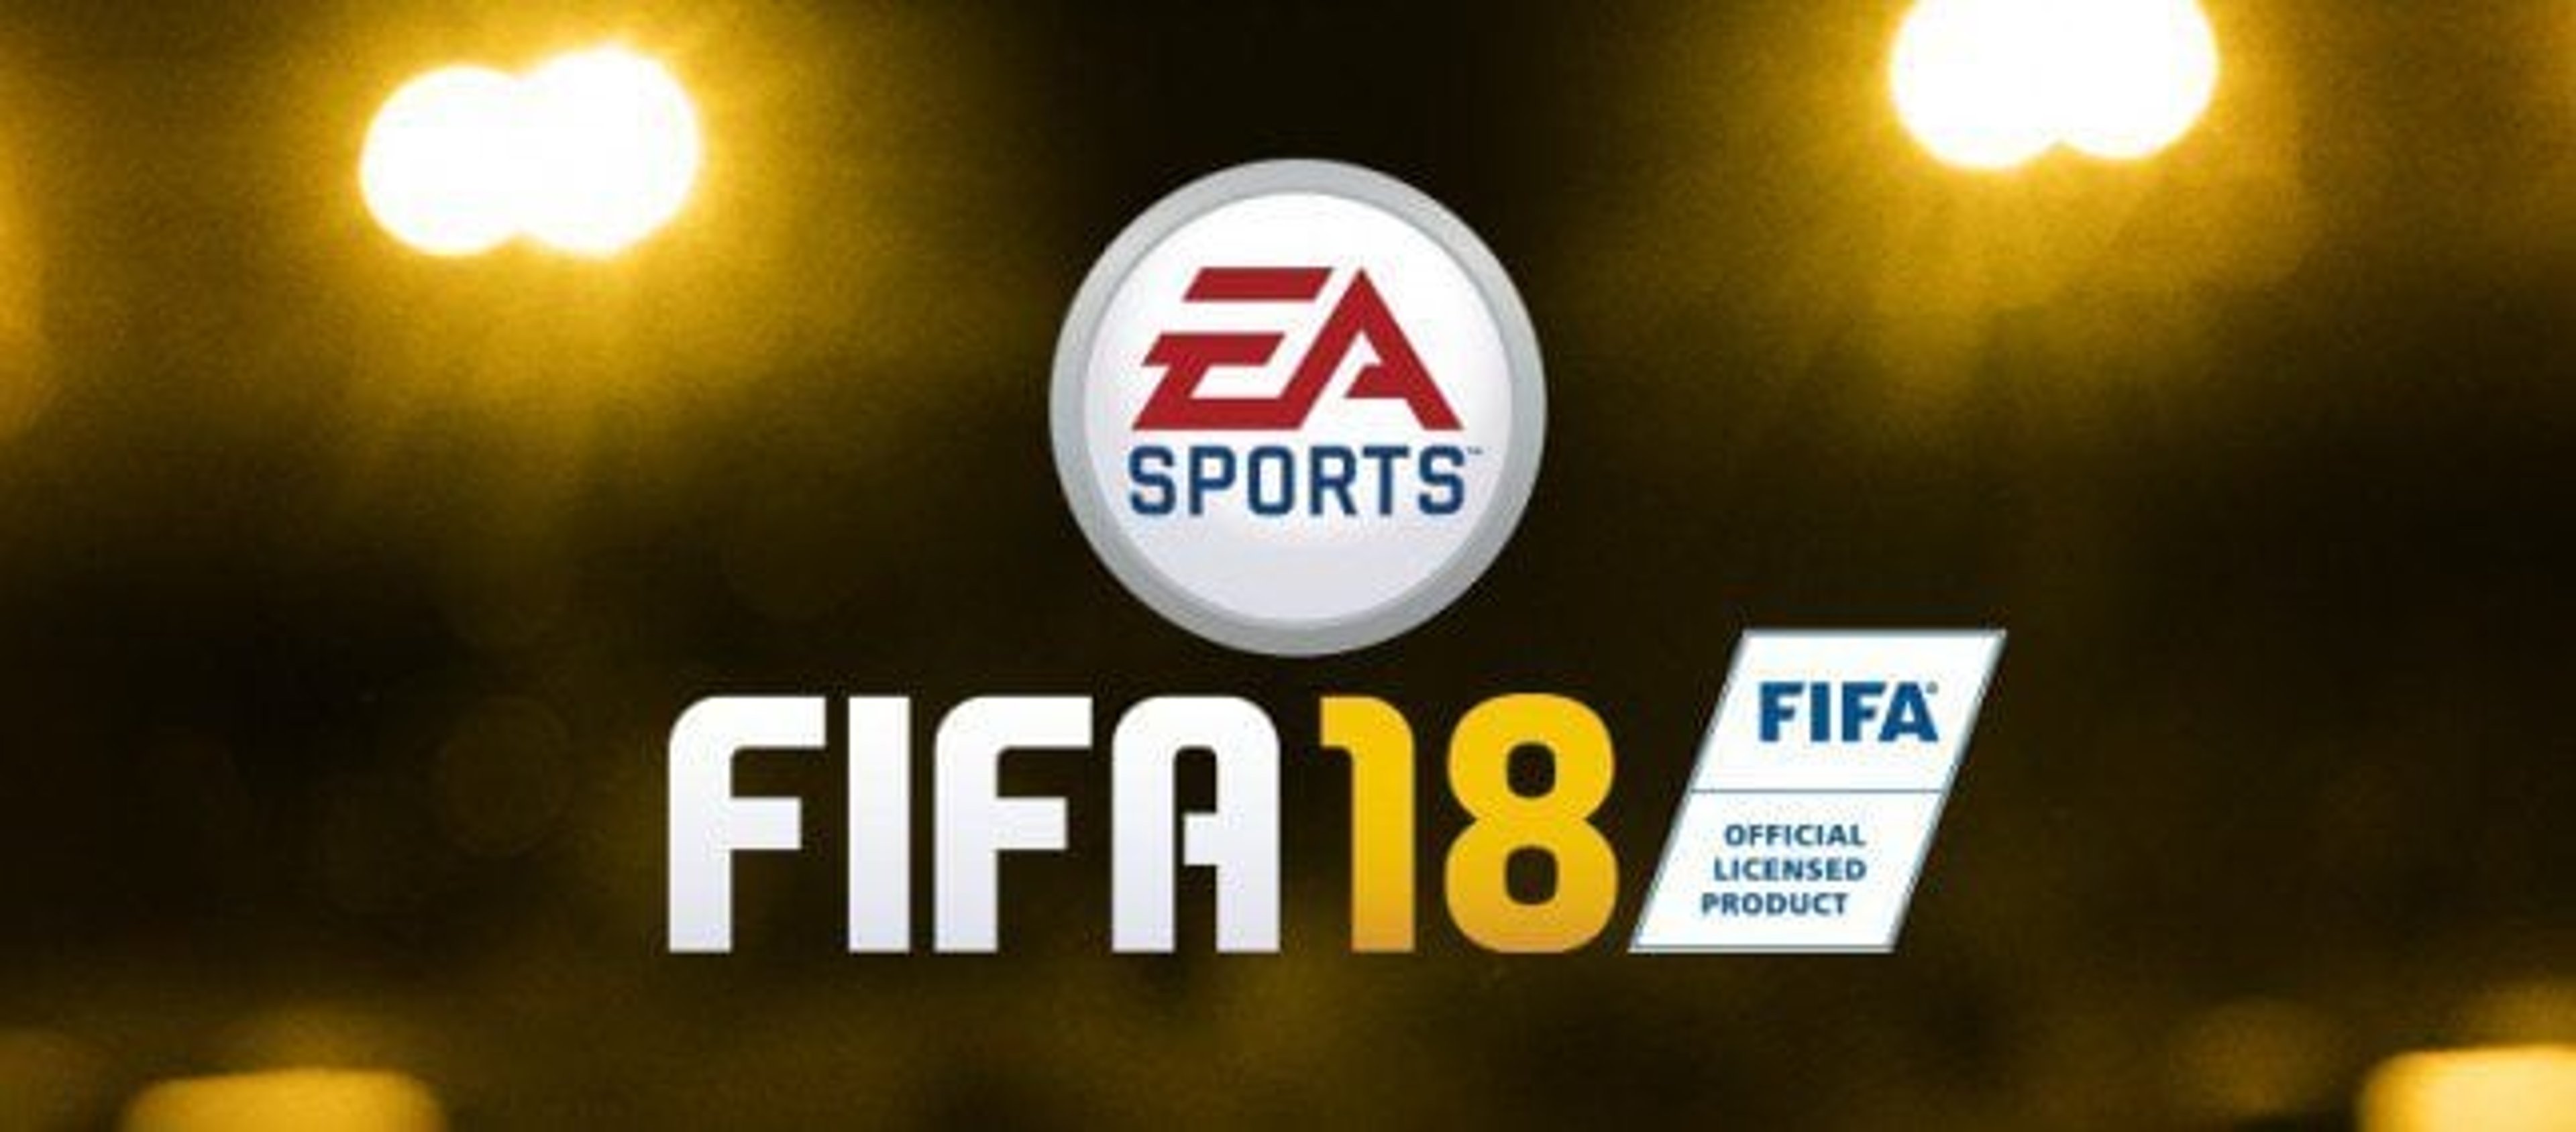 FIFA 18: Ecco il trailer ufficiale, dettagli e data di uscita! Cover